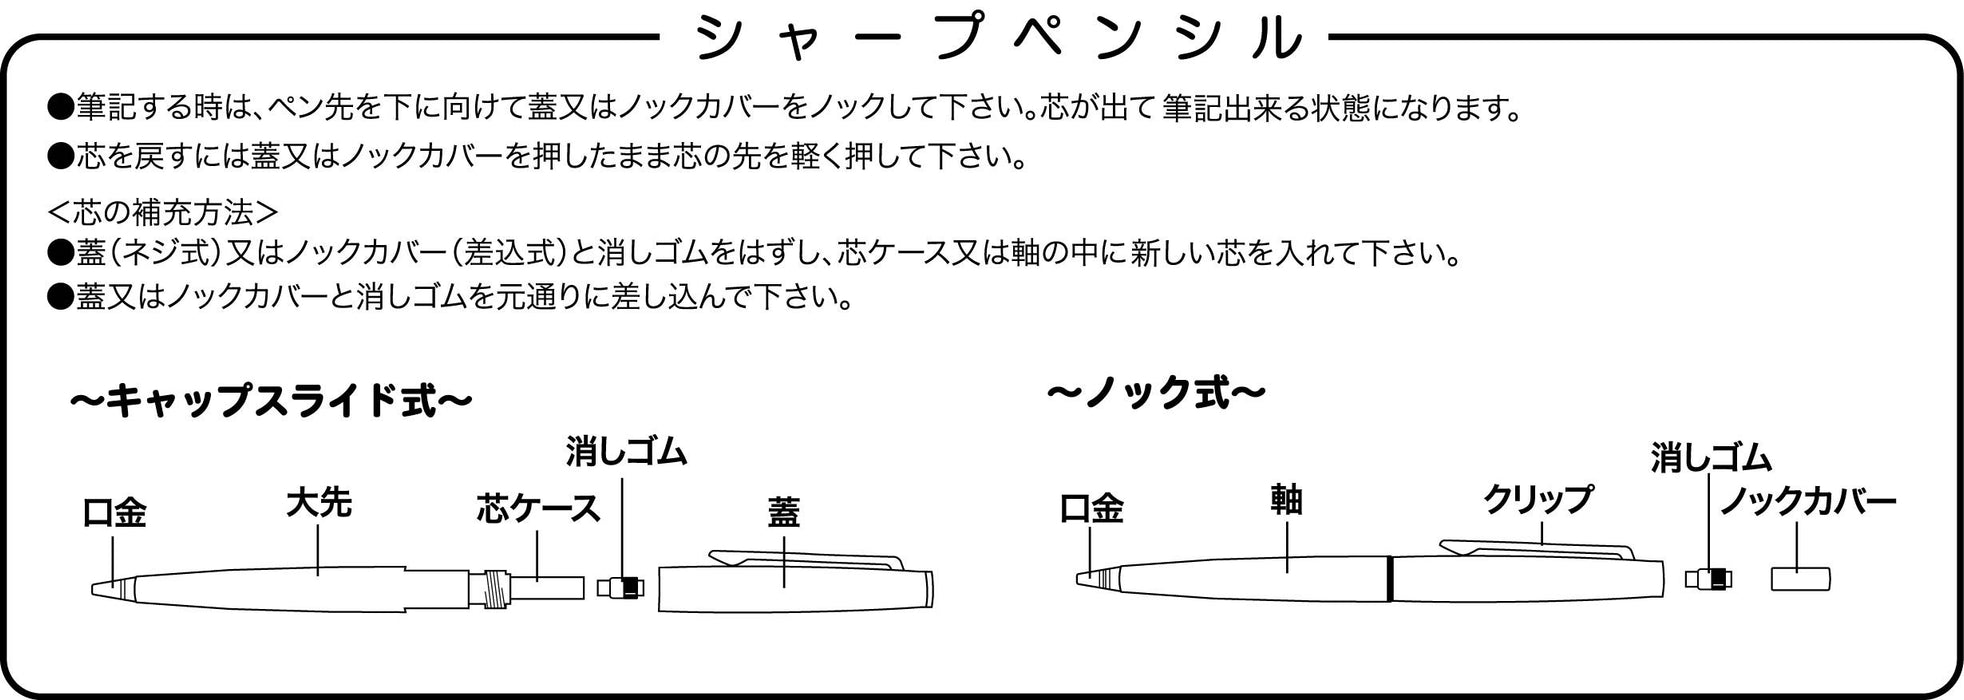 Sailor Fountain Pen Pro Color 300 Shikisai 0.5 HB 自动铅笔 Akanezora